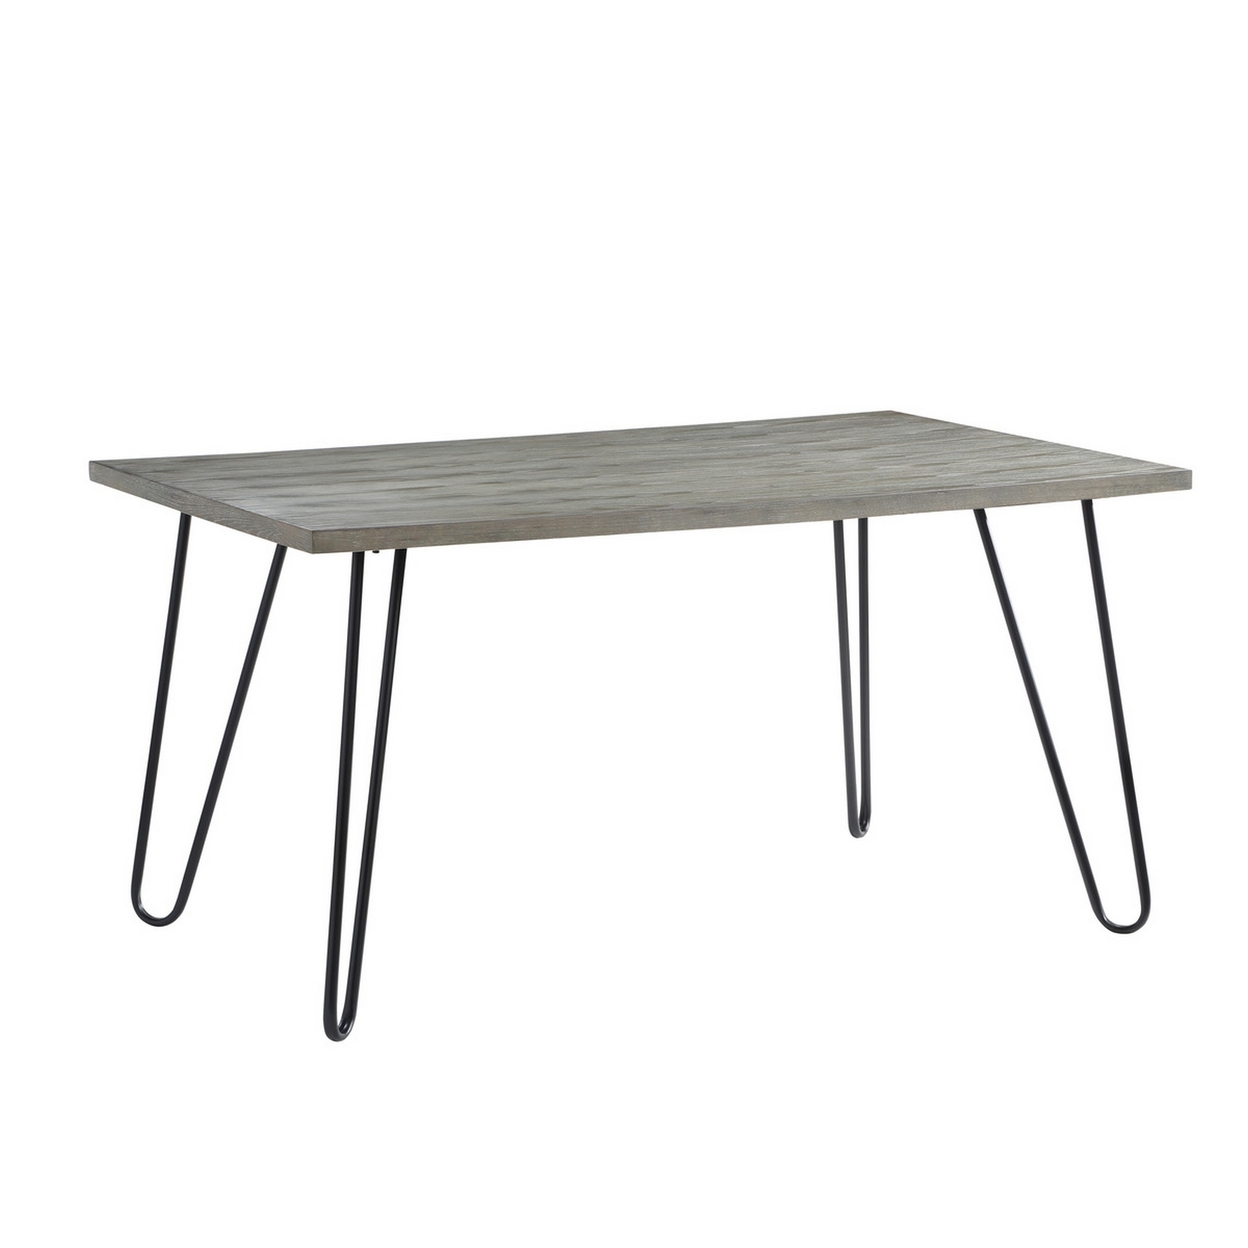 Mina 60 Inch Dining Table, Wood Surface, 4 Seater, Metal Hairpin Legs, Gray- Saltoro Sherpi